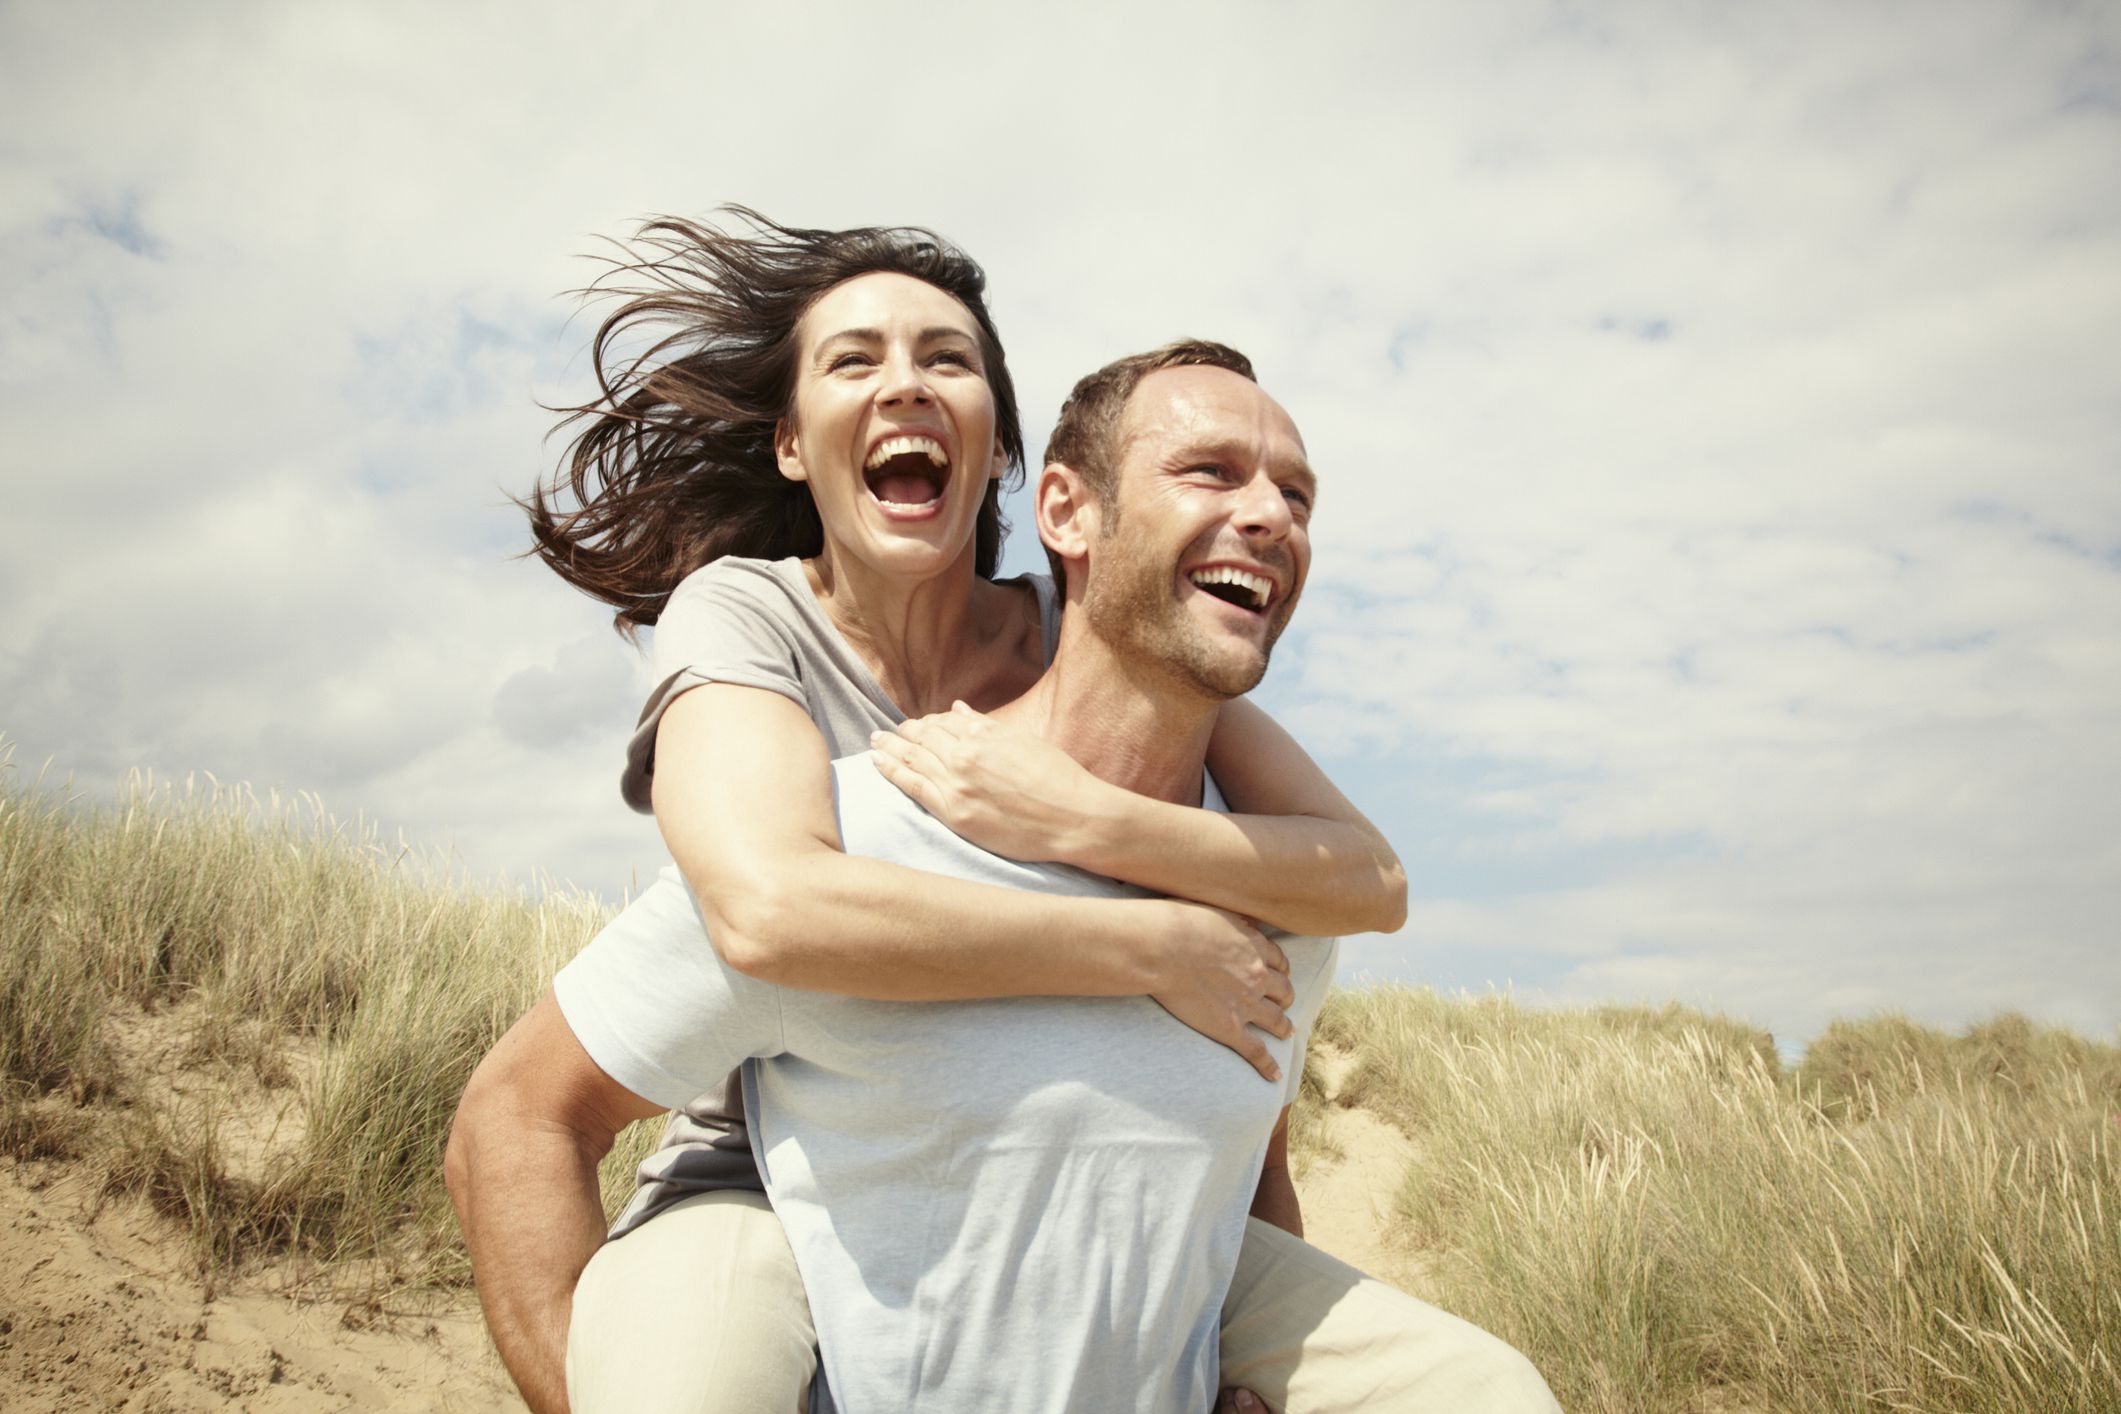 cinco cosas que no se deben hacer en una relación de pareja, según expertos